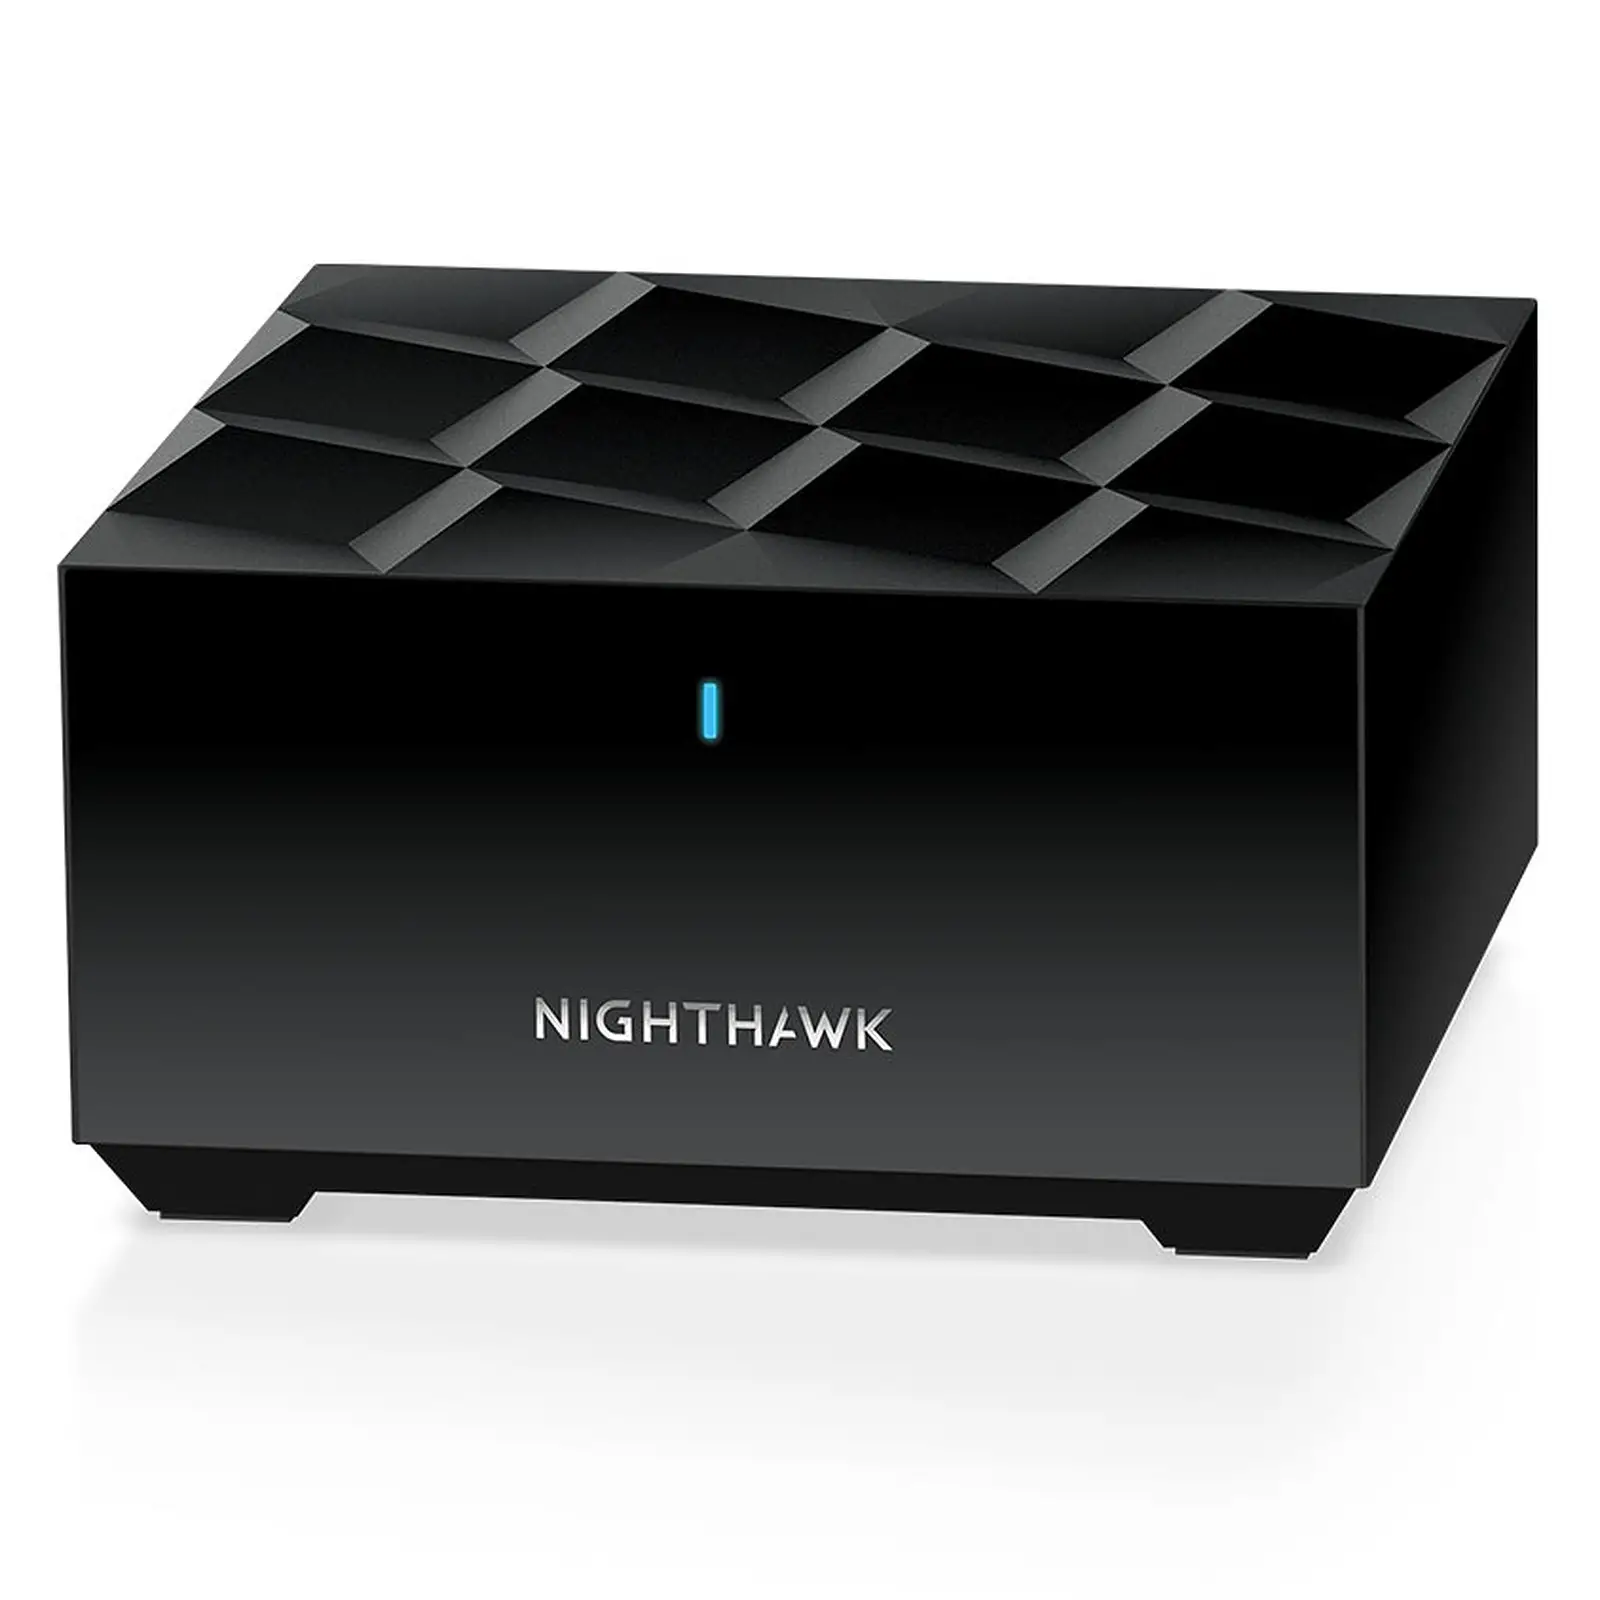 Il Netgear nighthawk mesh wifi 6 adotta un colore nero, insolito per i router mesh.